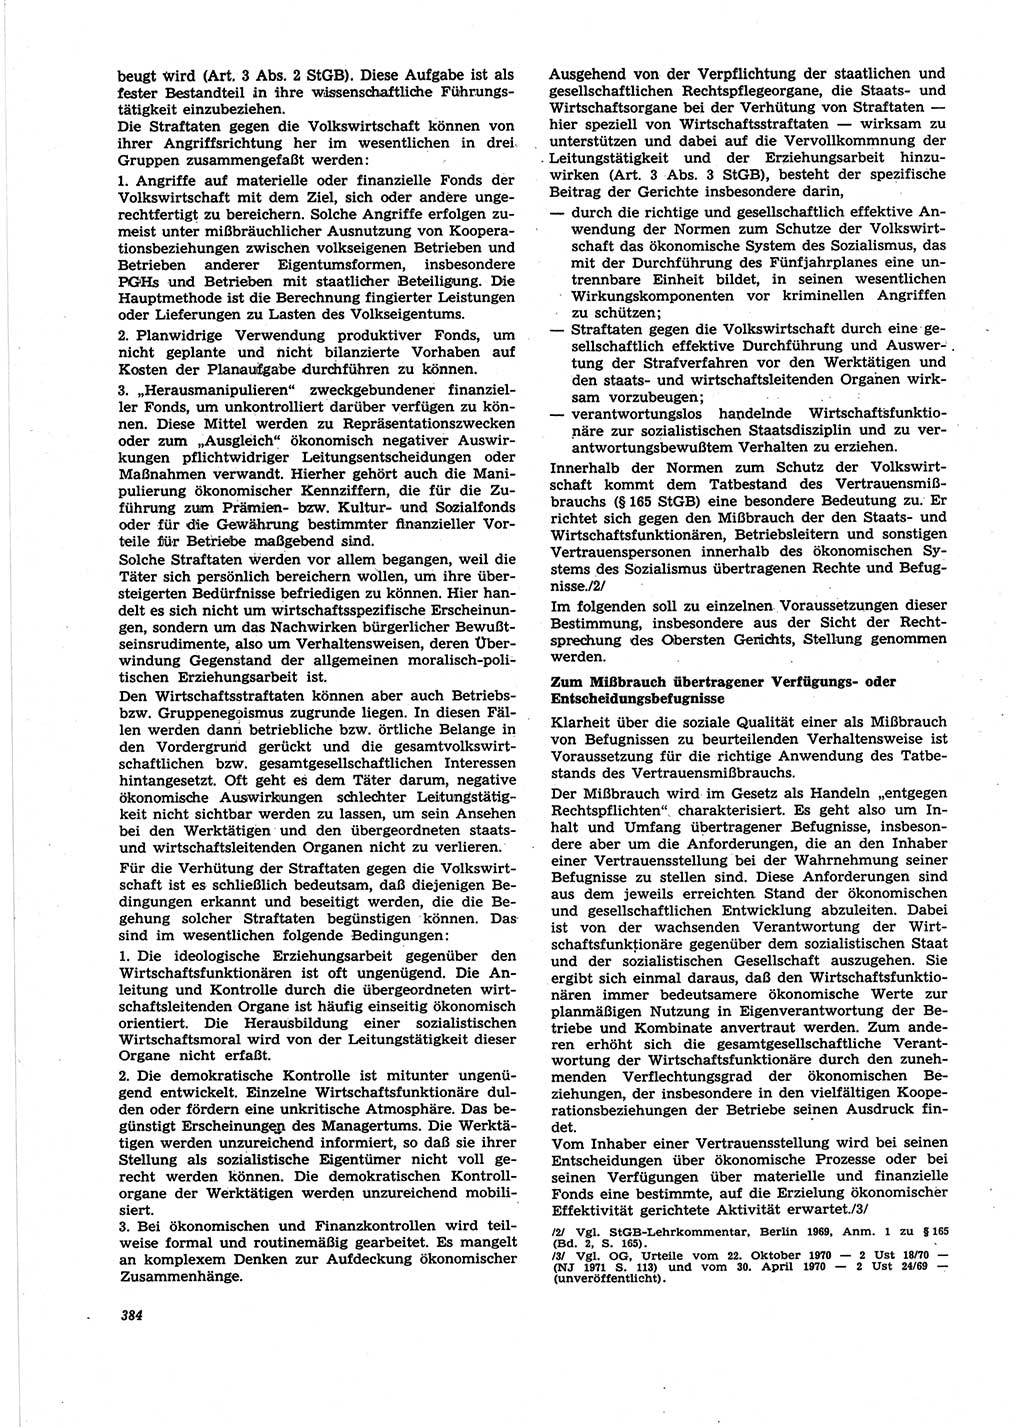 Neue Justiz (NJ), Zeitschrift für Recht und Rechtswissenschaft [Deutsche Demokratische Republik (DDR)], 25. Jahrgang 1971, Seite 384 (NJ DDR 1971, S. 384)